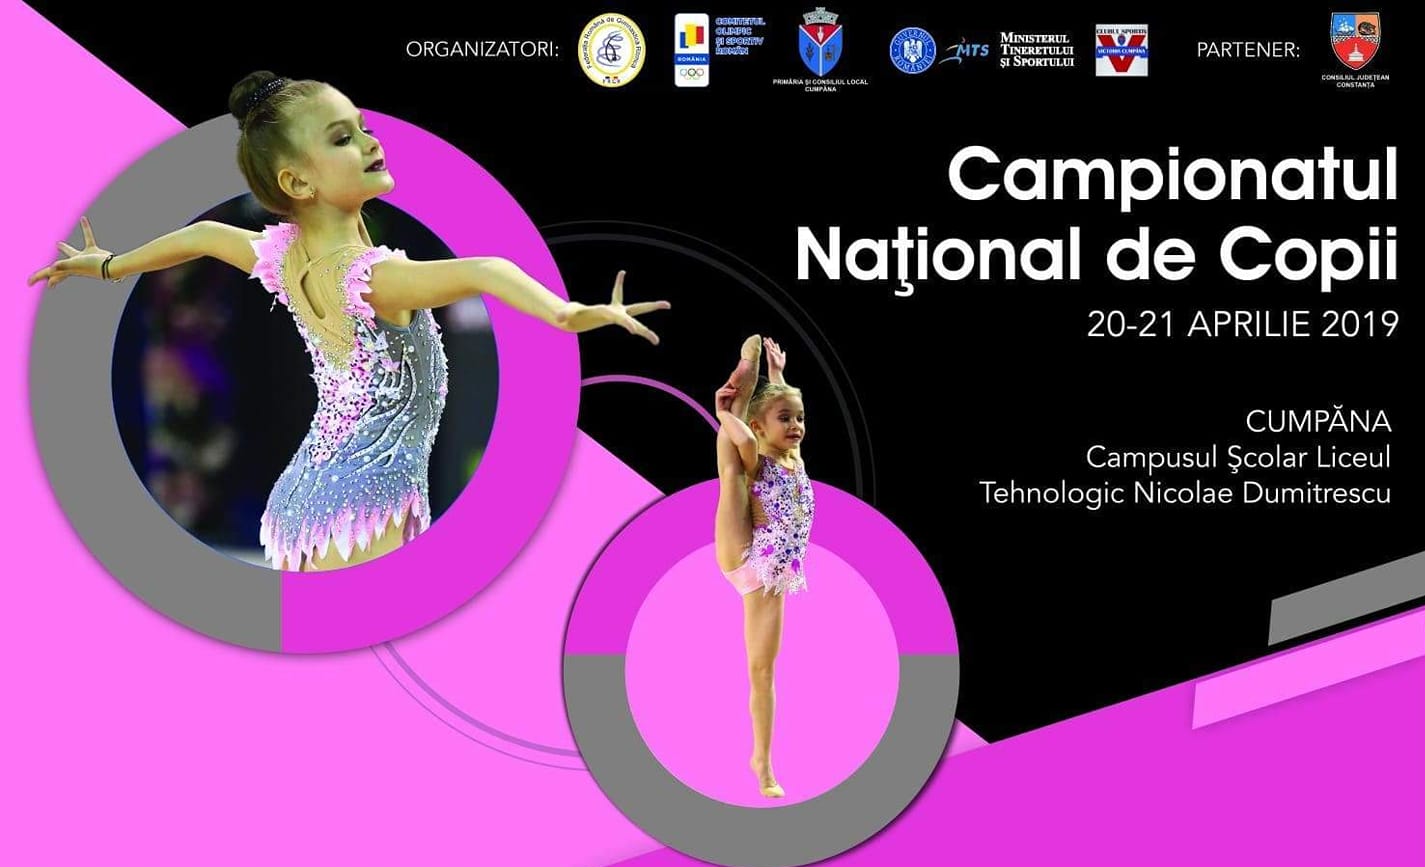 Campionatul Național de Gimnastică Ritmică pentru Copii are loc în Cumpăna